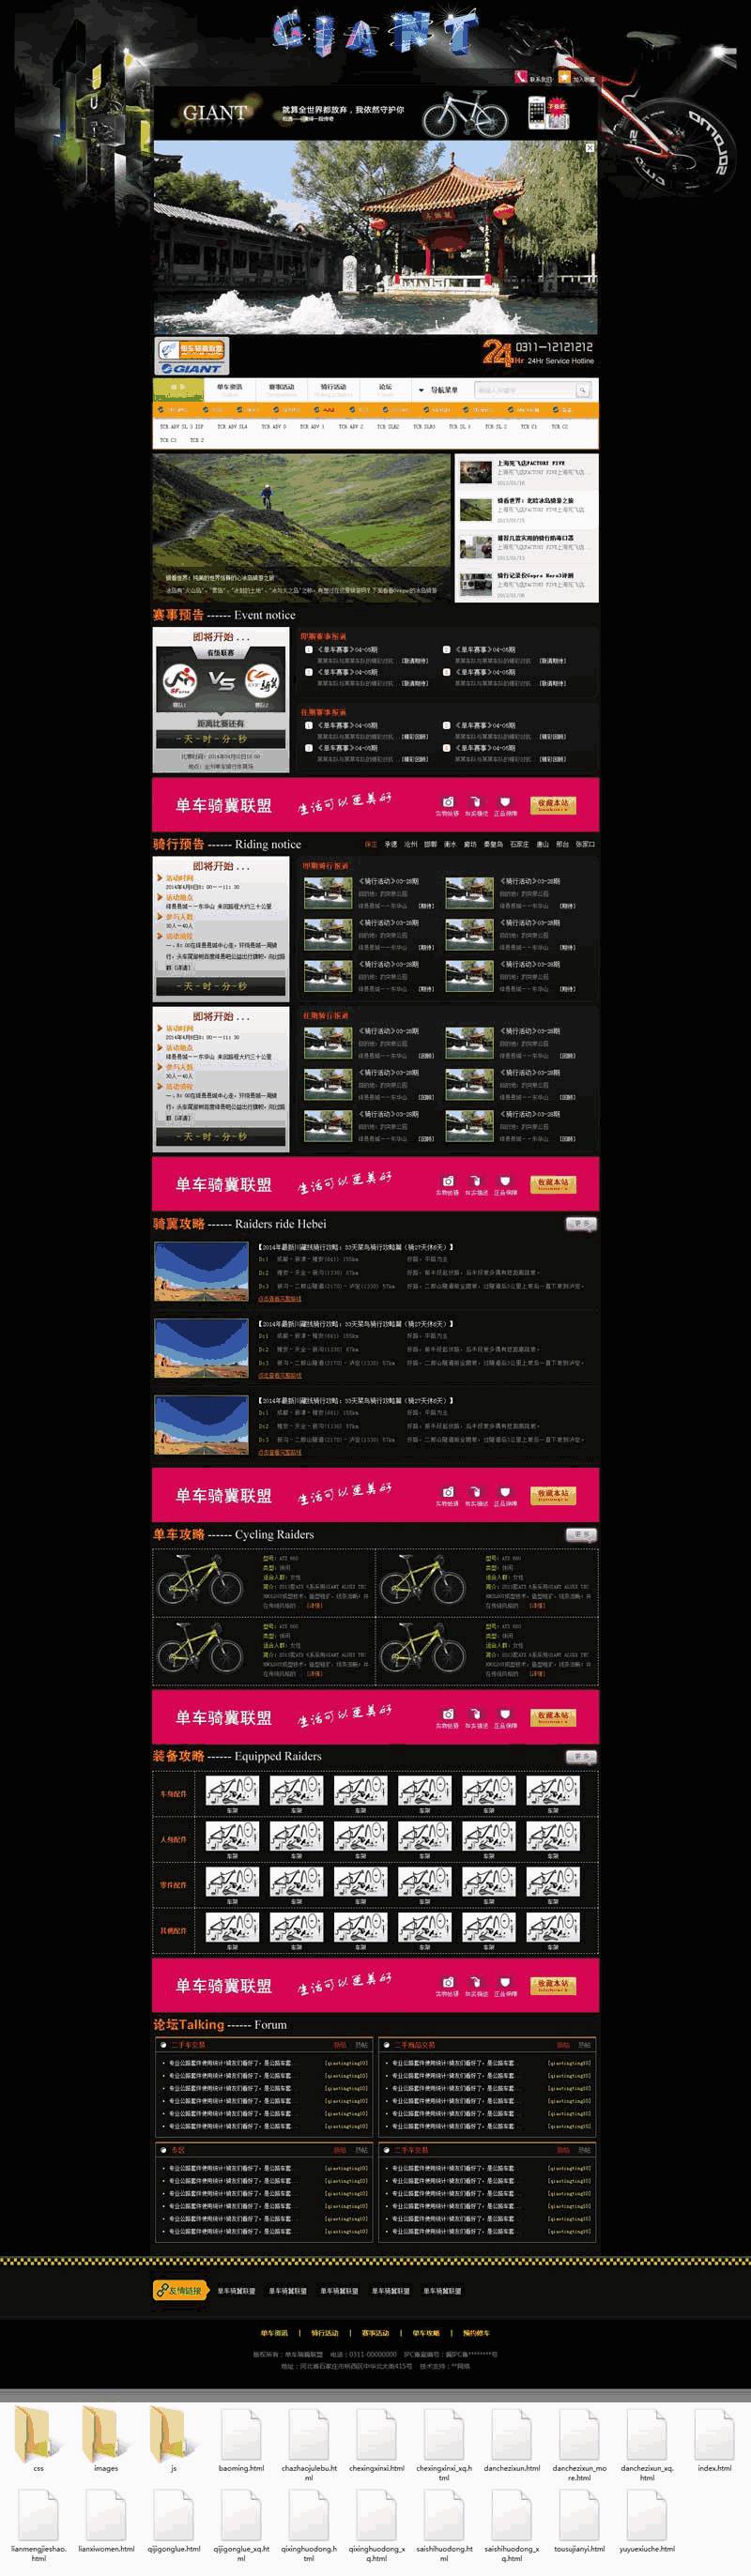 单车俱乐部联盟平台网站制作_网站建设模板演示图